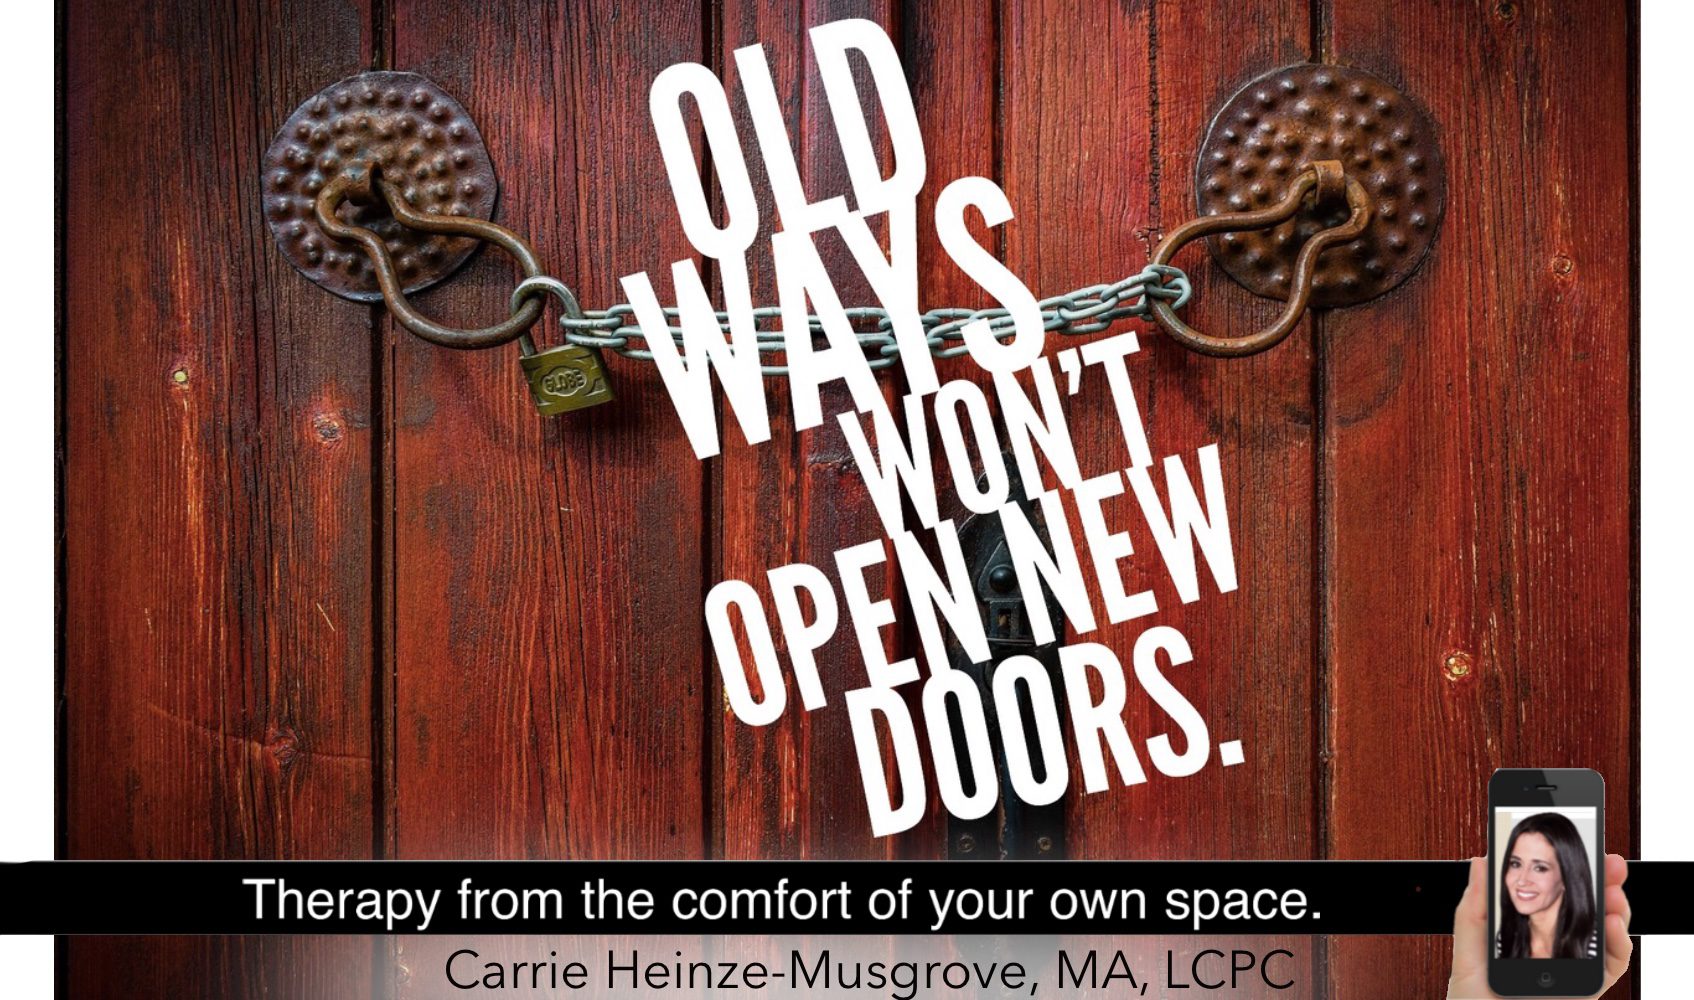 Old ways will not open new doors